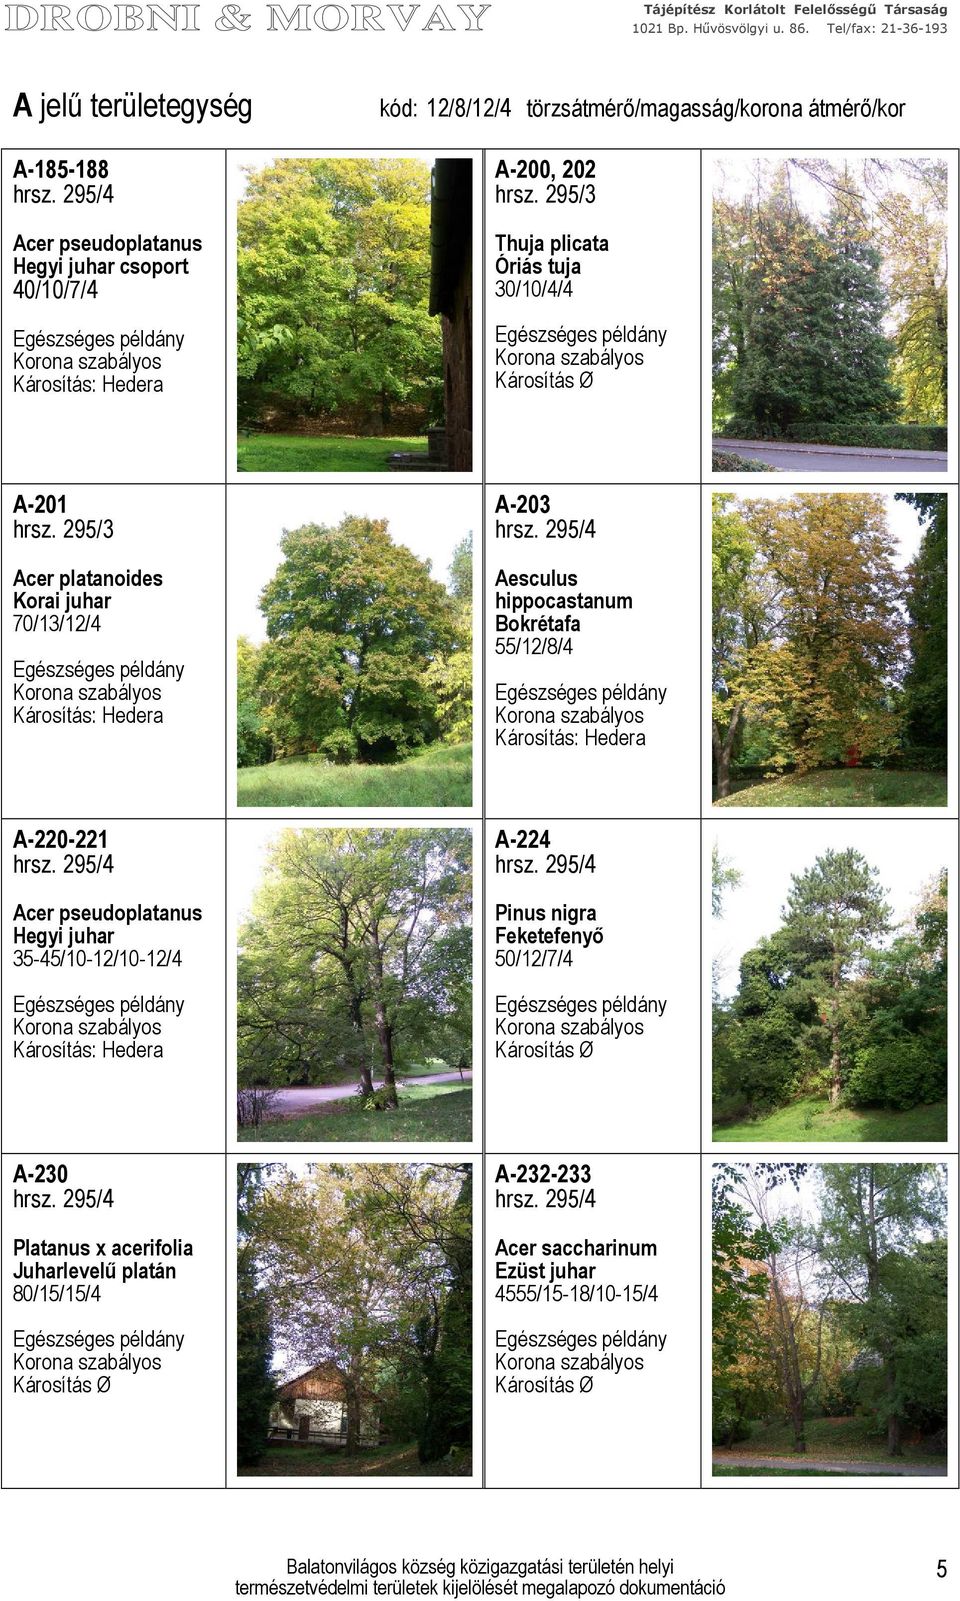 Bokrétafa 55/12/8/4 A-220-221 Acer pseudoplatanus Hegyi juhar 35-45/10-12/10-12/4 A-224 Pinus